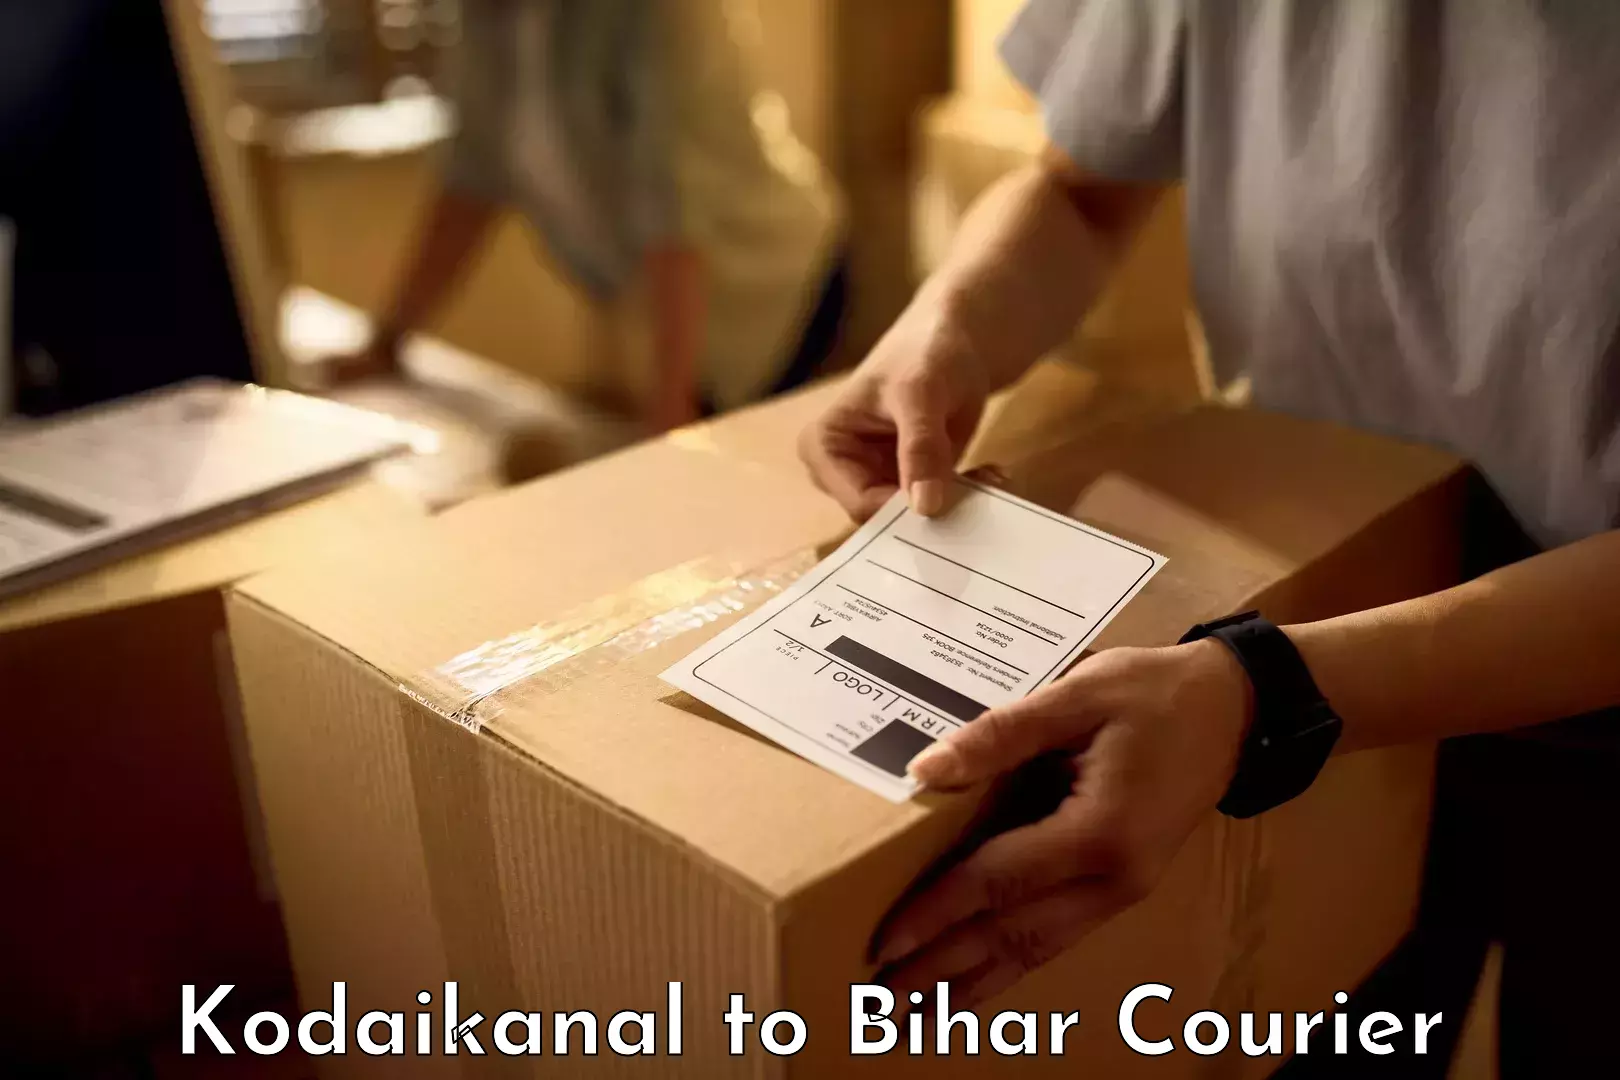 Baggage courier service Kodaikanal to Goh Aurangabad